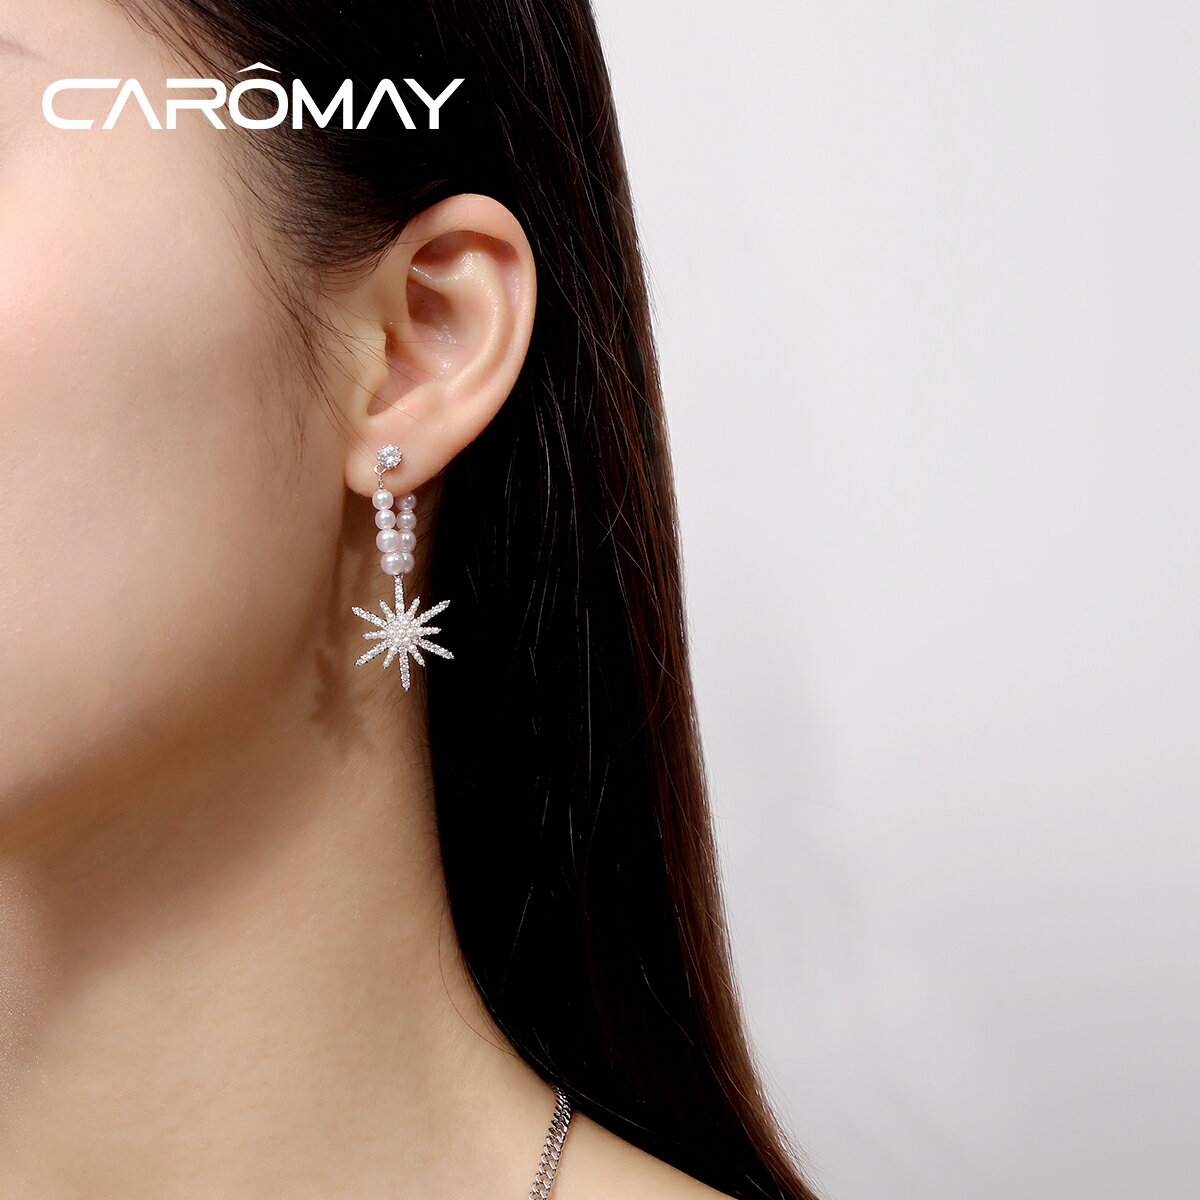 CAROMAY八芒星耳釘女淡水珍珠耳環小巧簡約耳環年新款潮耳飾